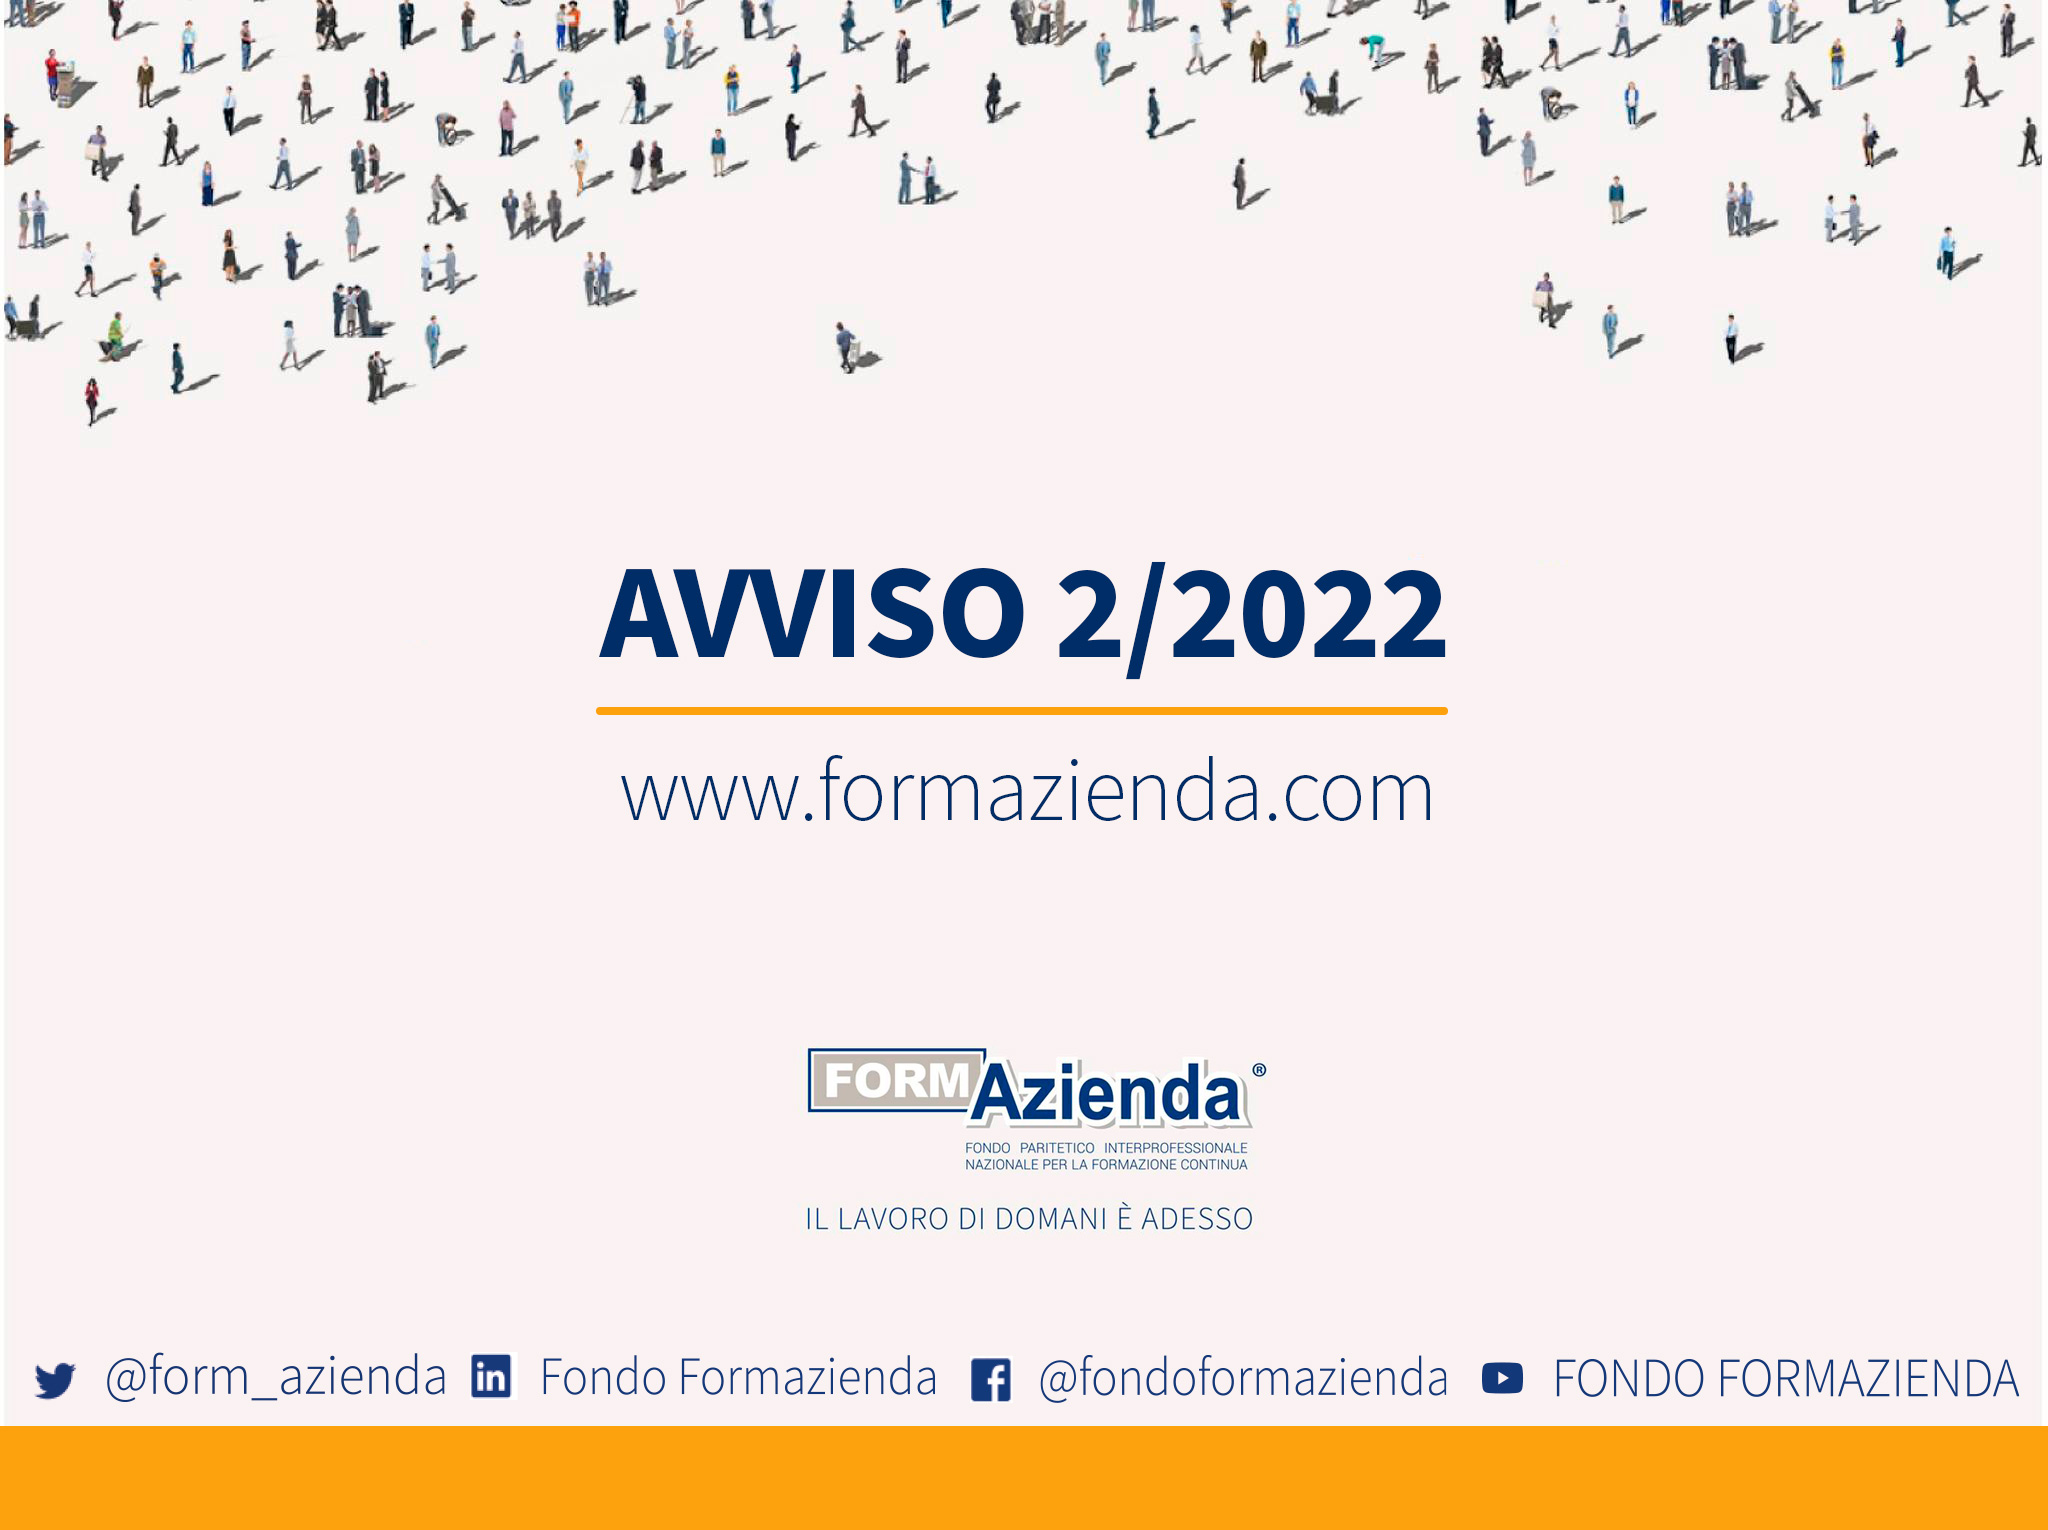 PUBBLICATO L’AVVISO 2/2022 A SPORTELLO